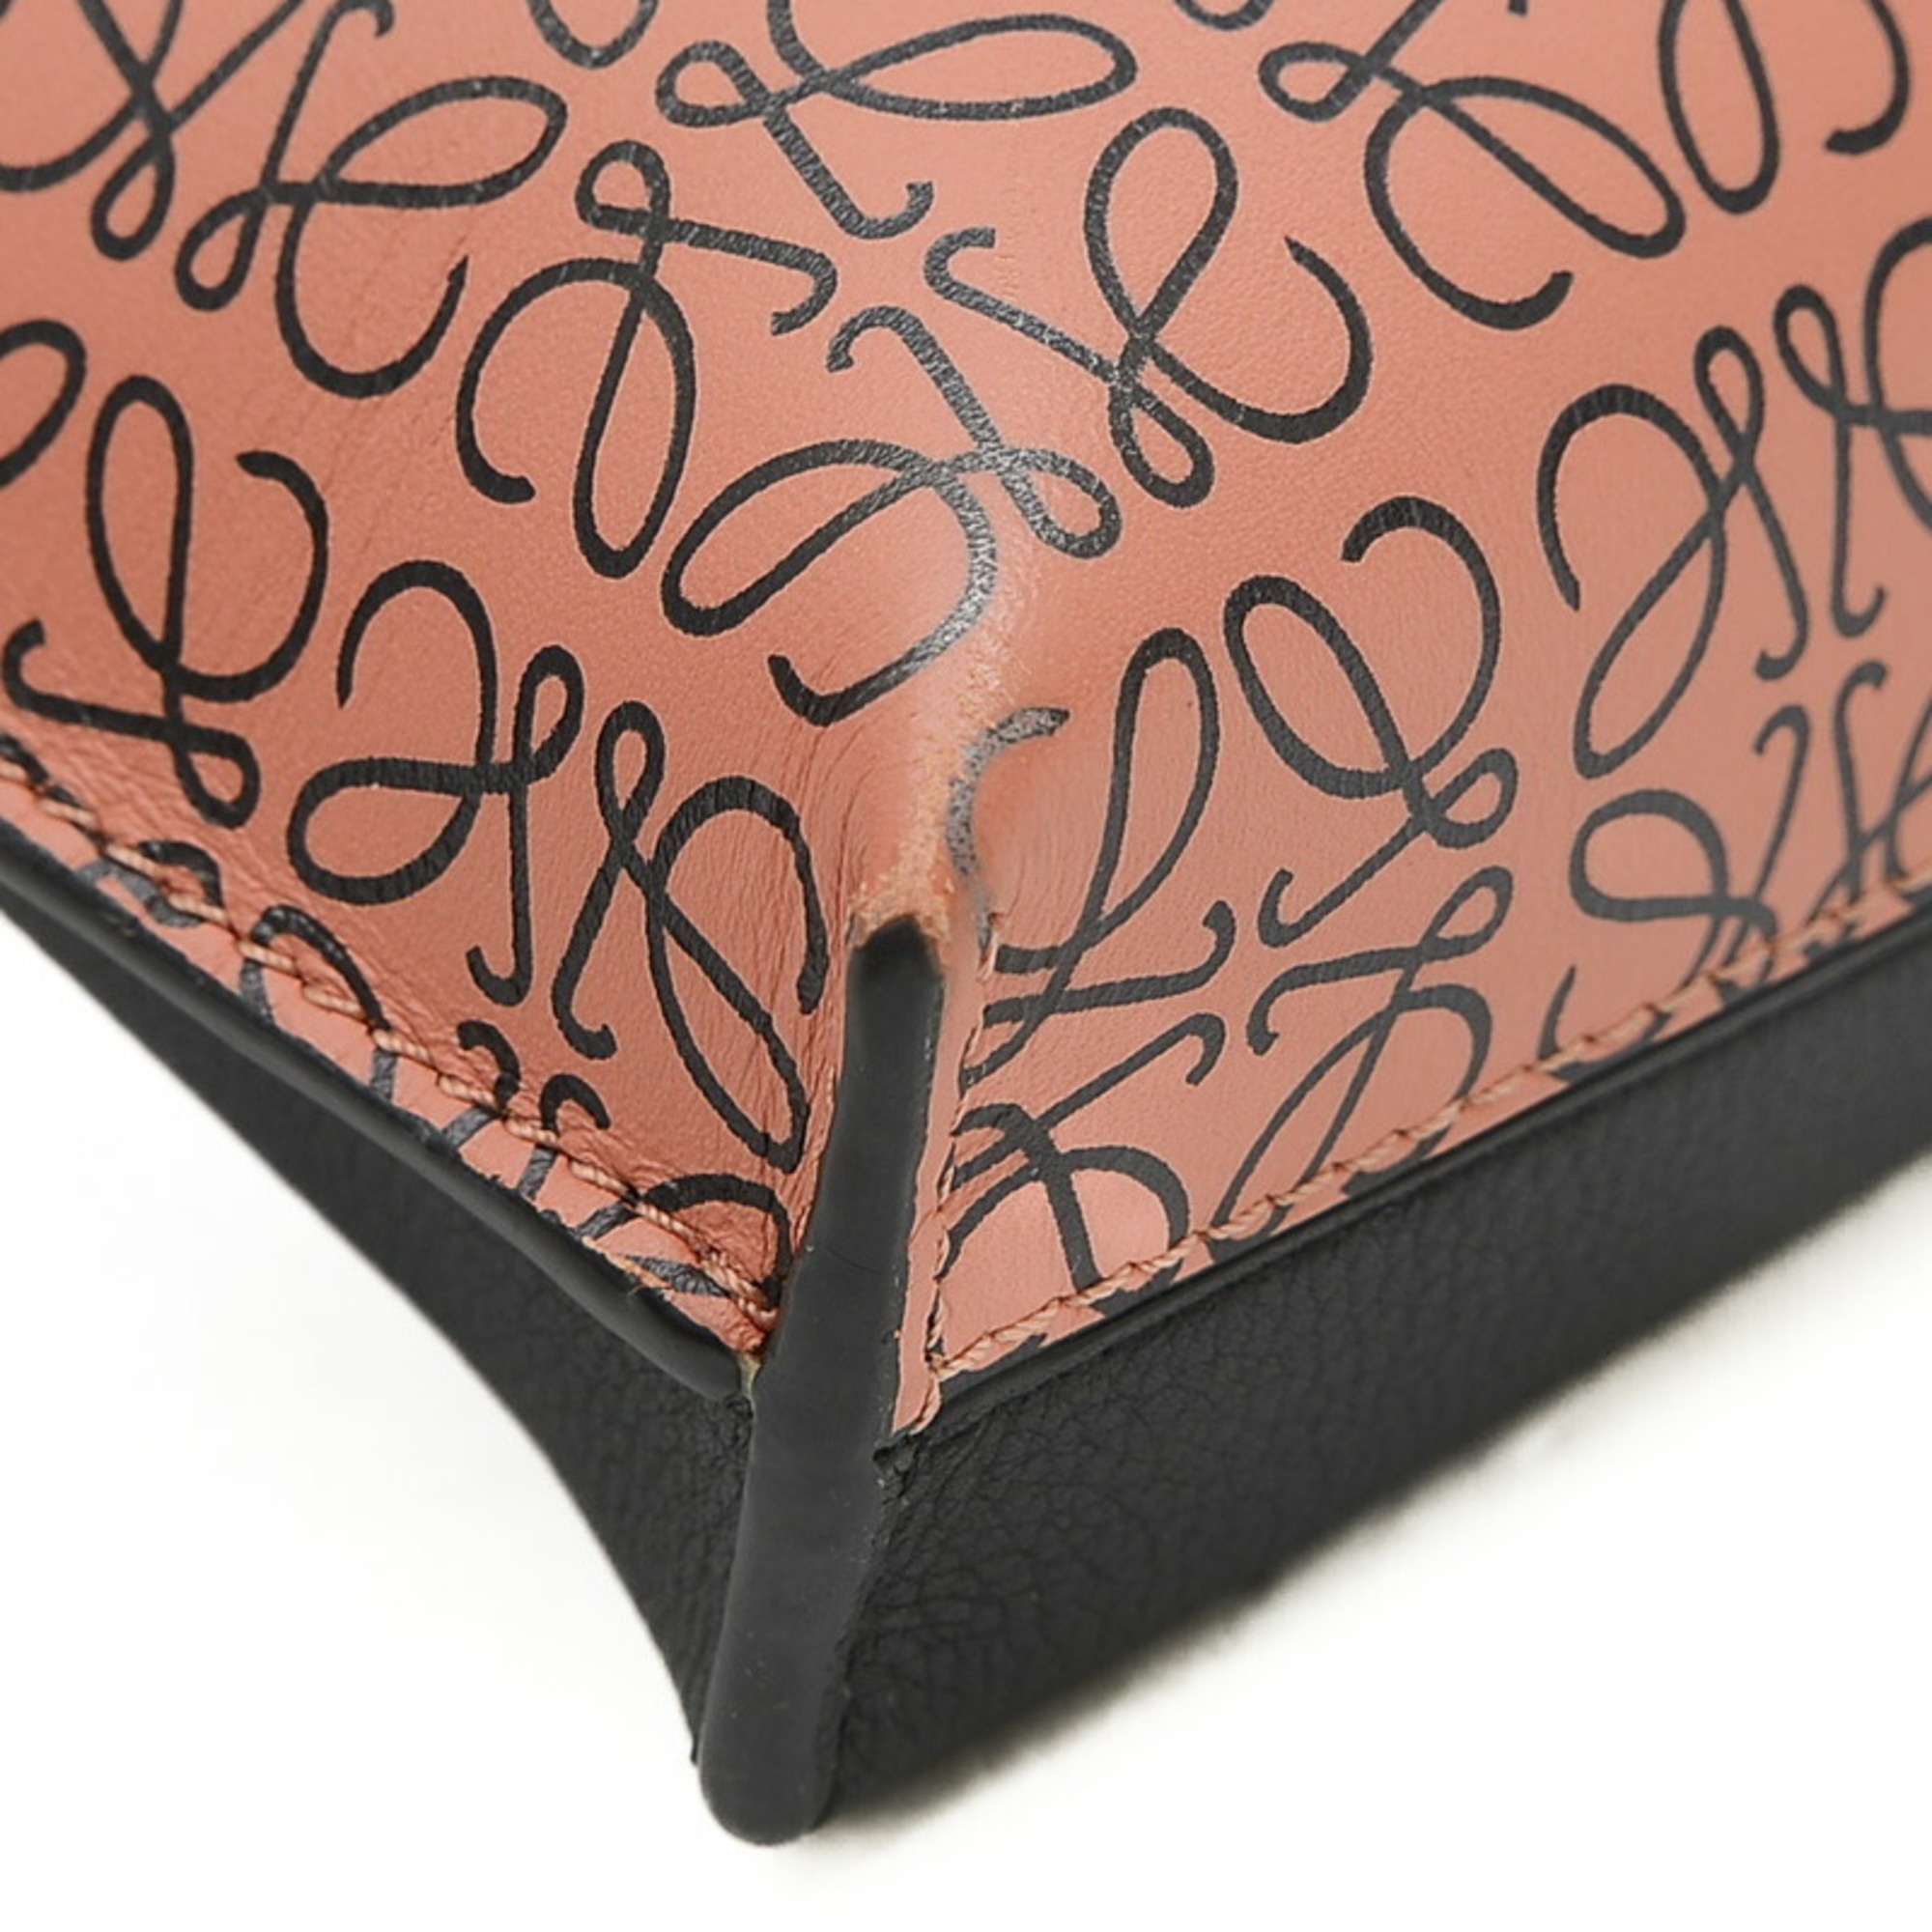 Loewe Missy Small Anagram 2Way Bag Leather Orange Black 327.54.S28